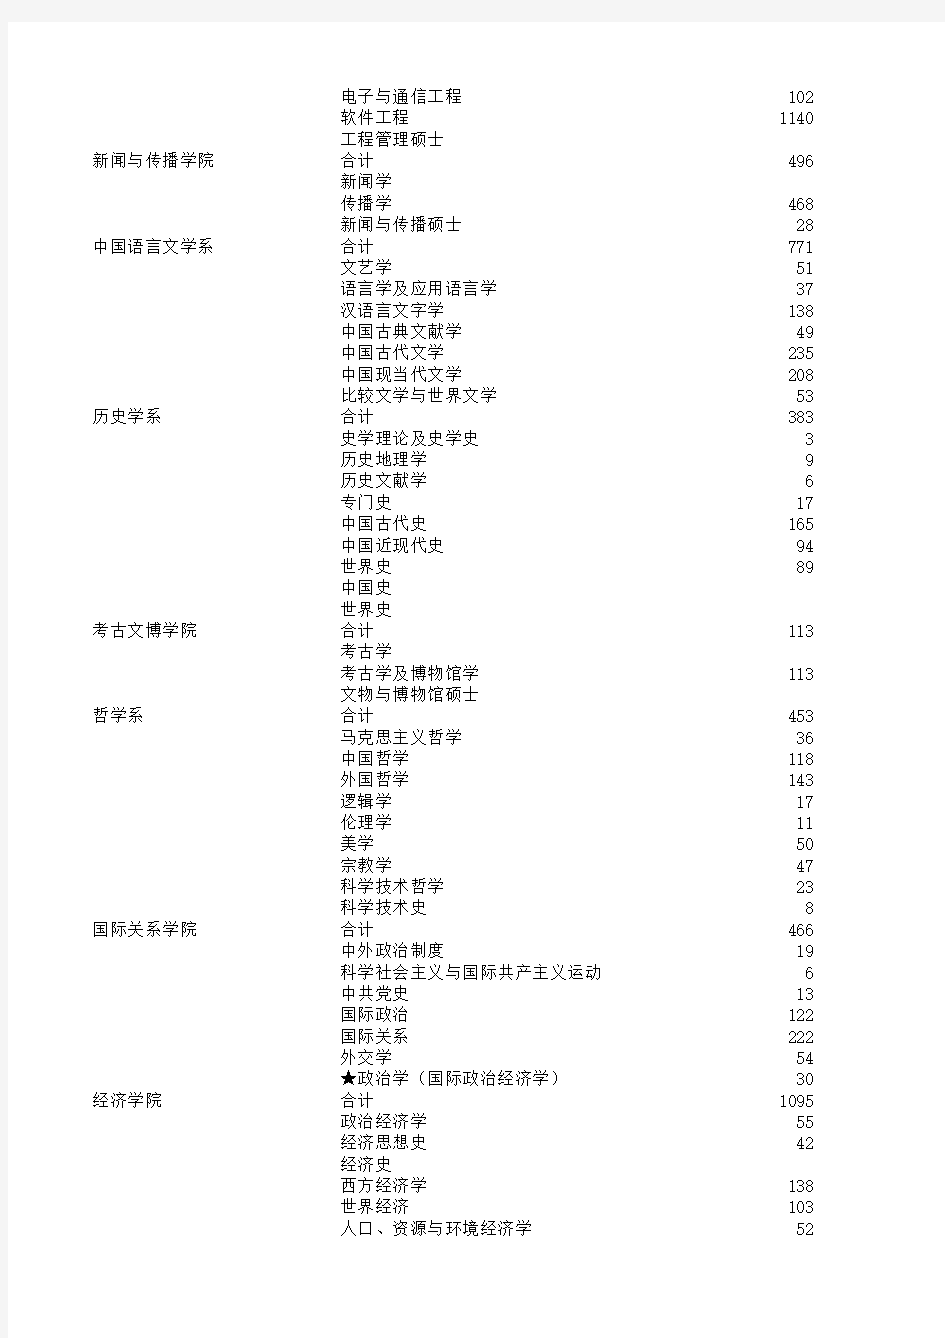 北京大学2011年-2013年硕士生(内地生源)报名、录取统计